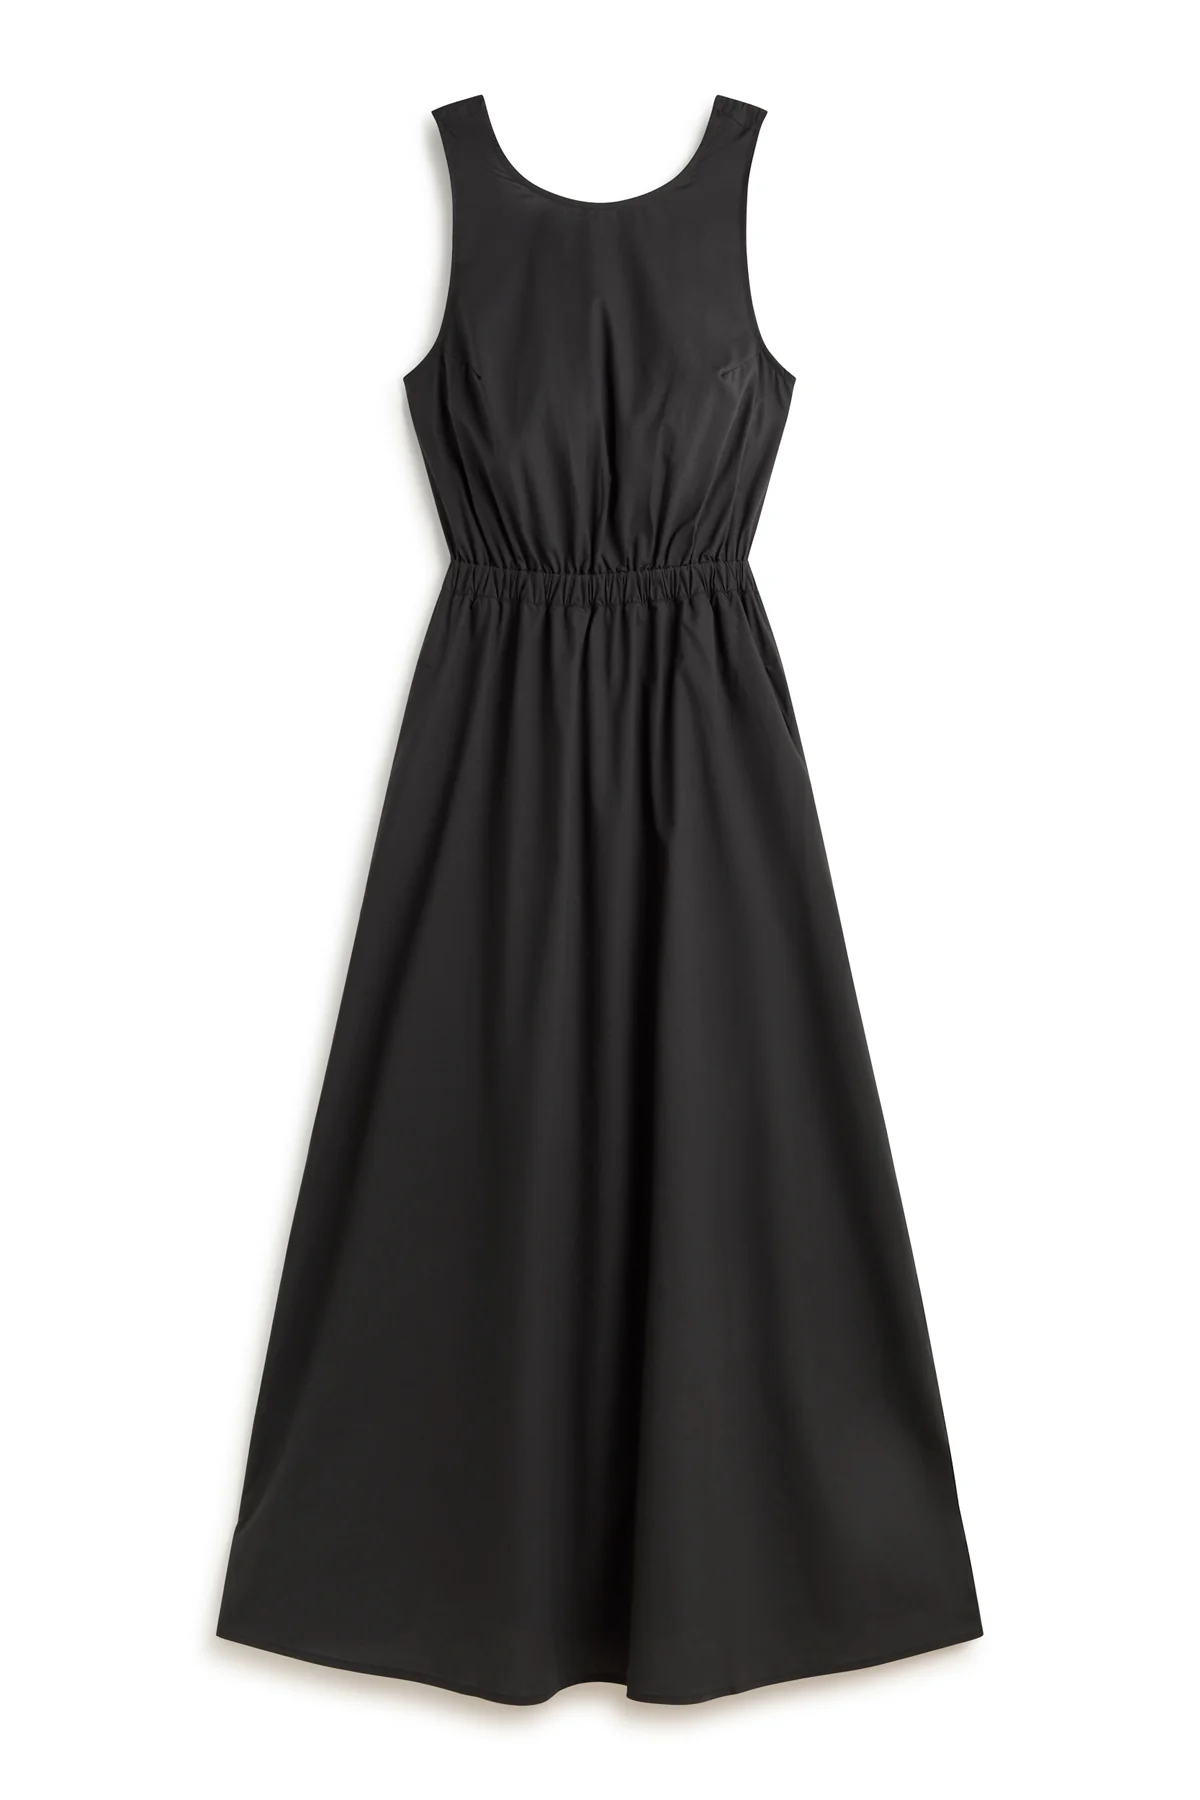 ECOALF vestido color negro con lazo en la espalda - 6